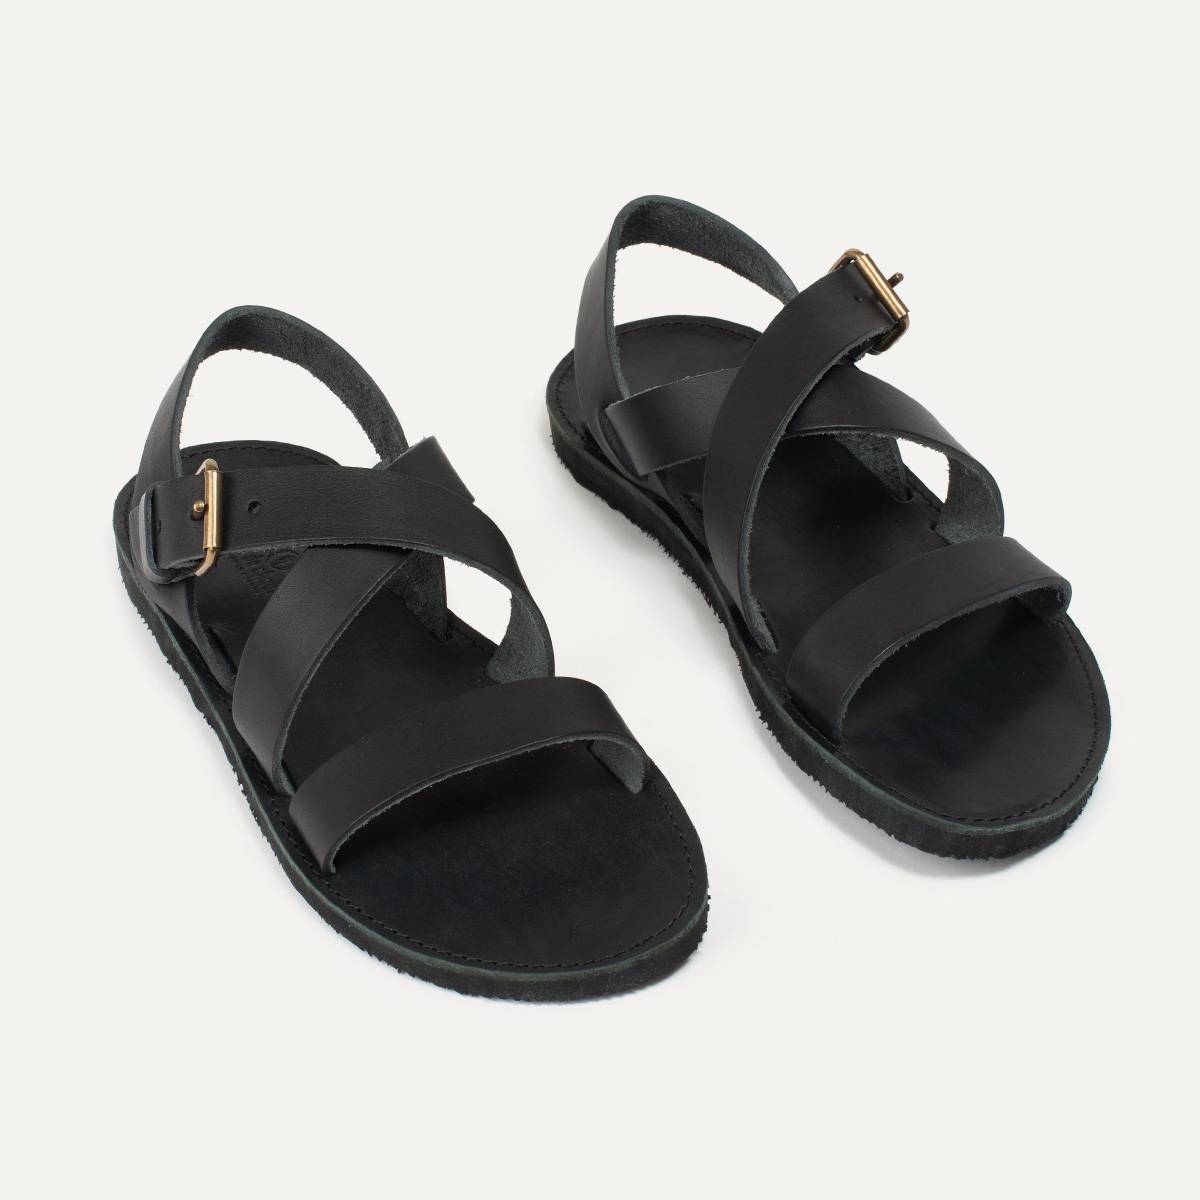 Iwate leather sandals - Black (image n°5)